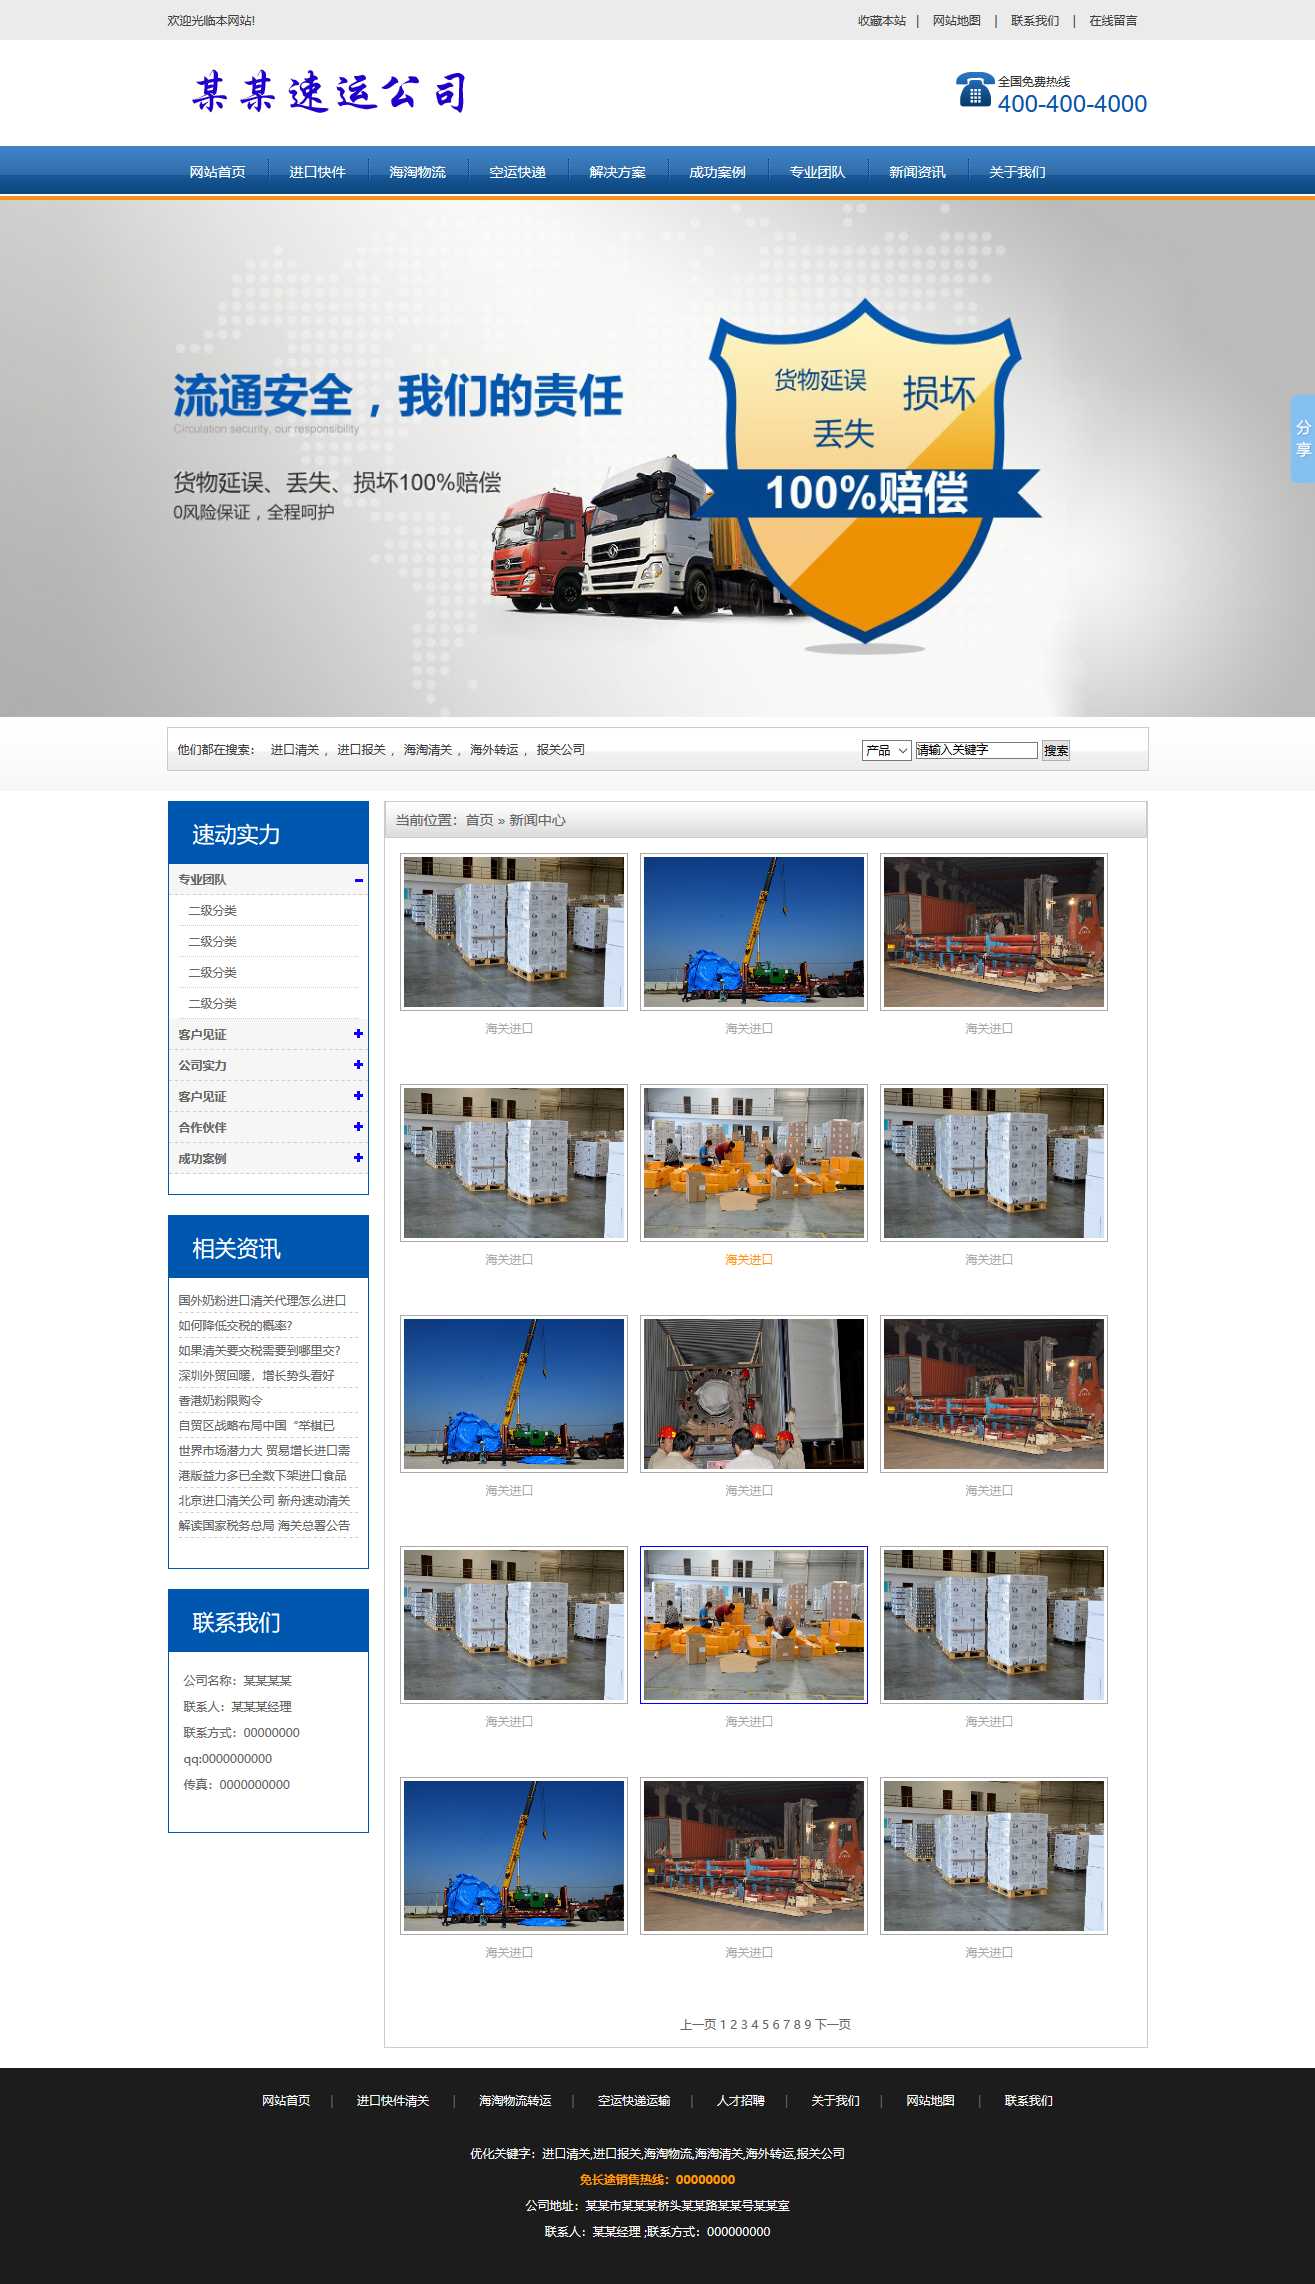 进出口海关,海淘物流,海外转运公司网站图片列表效果图